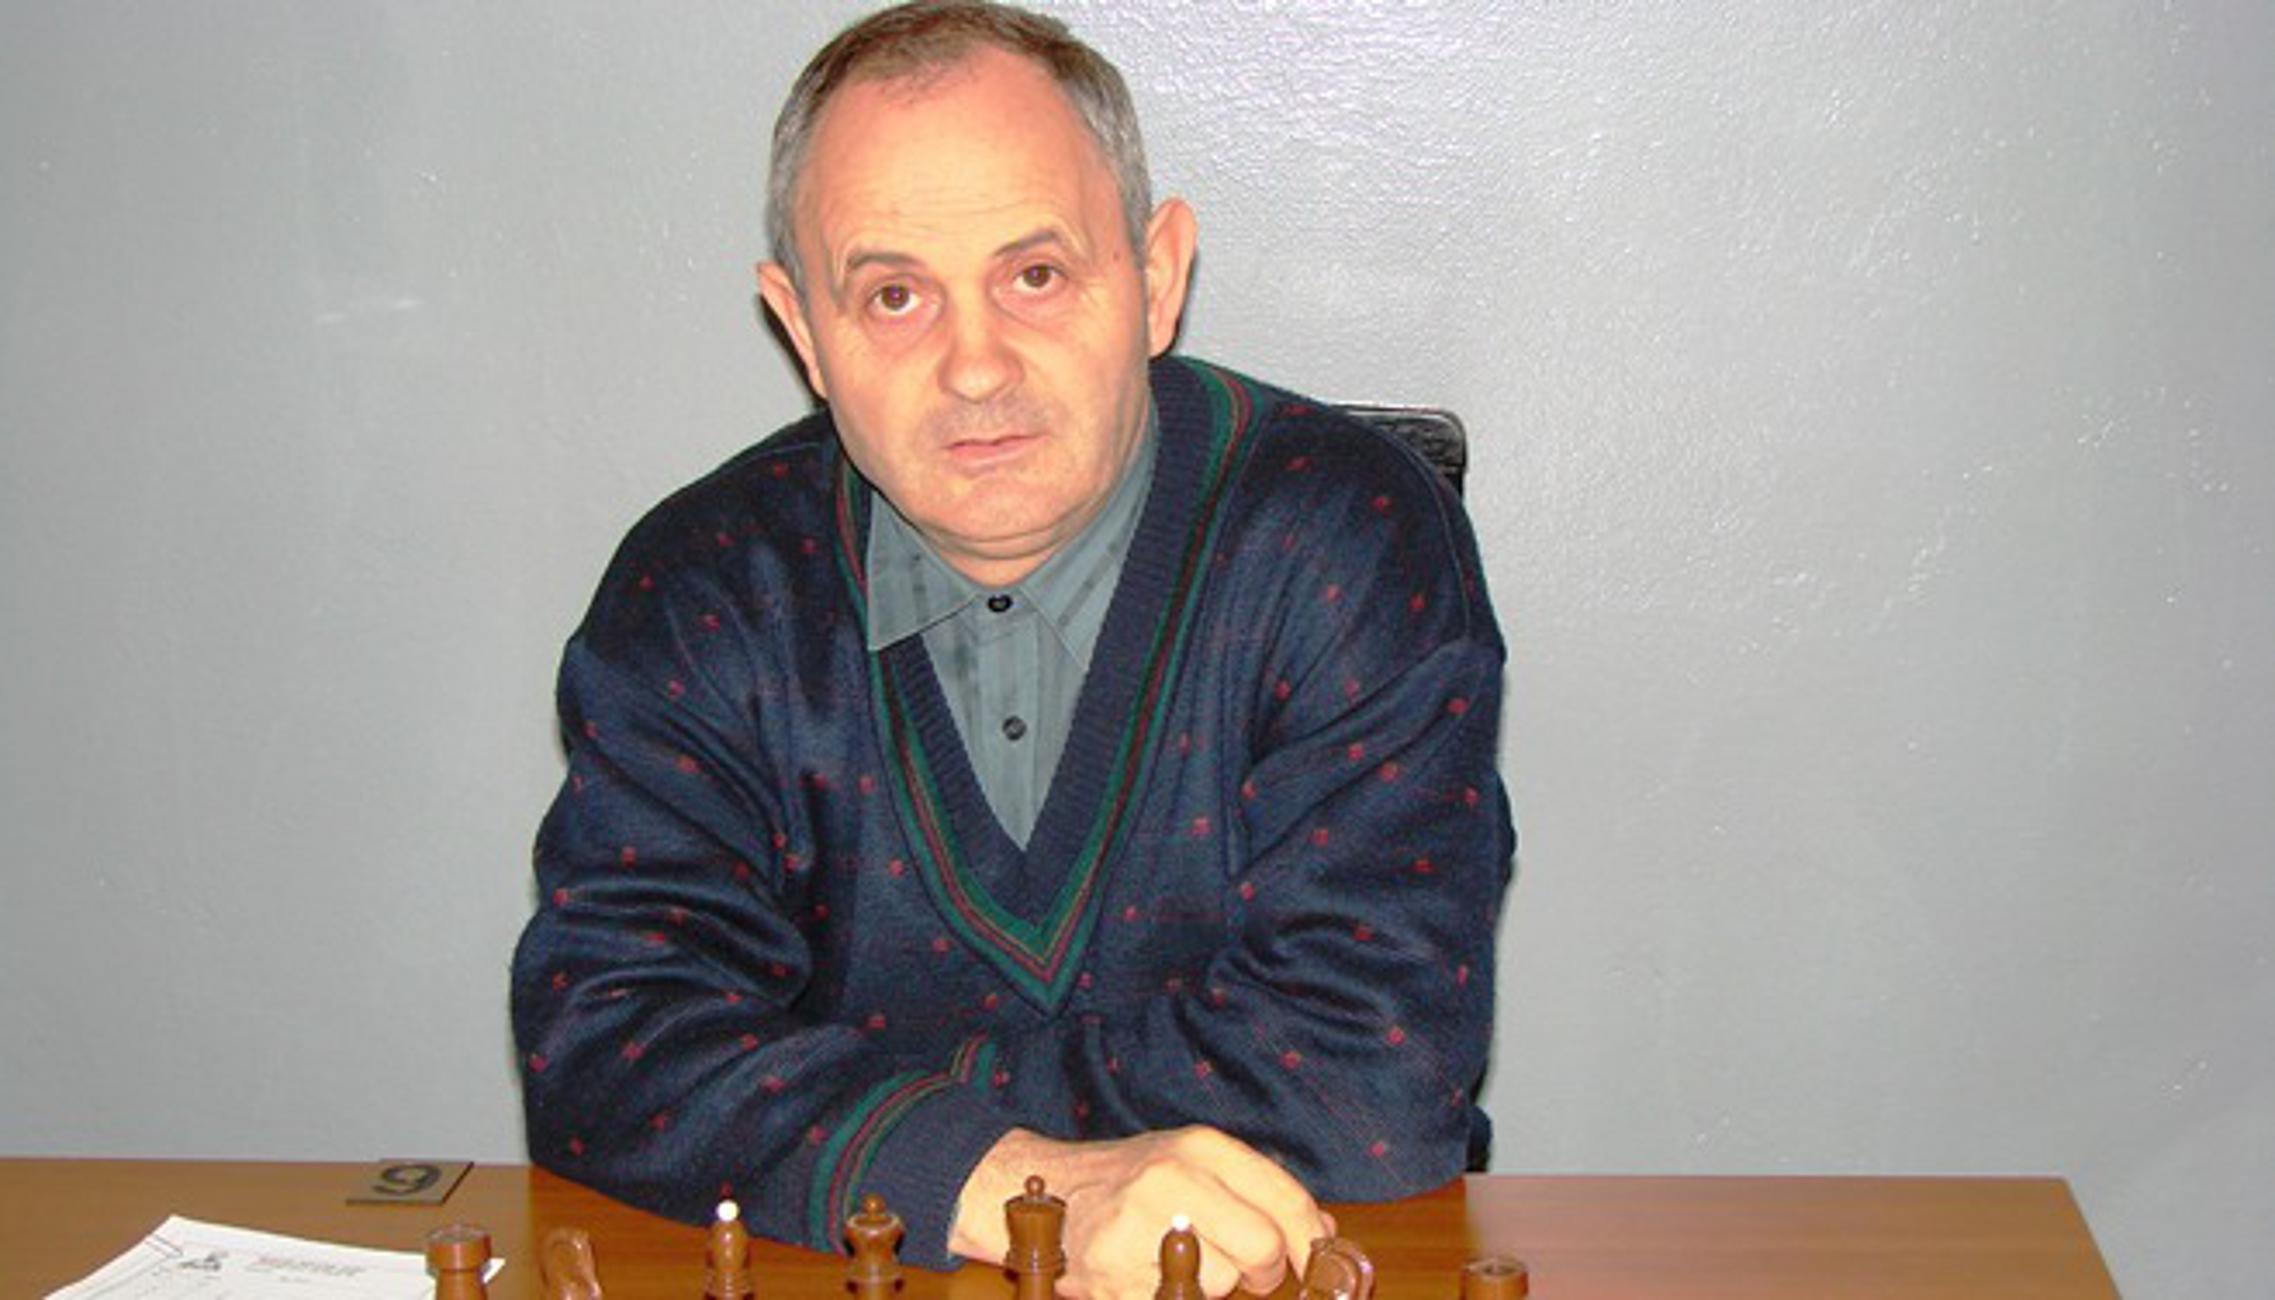 Branko Pekarik